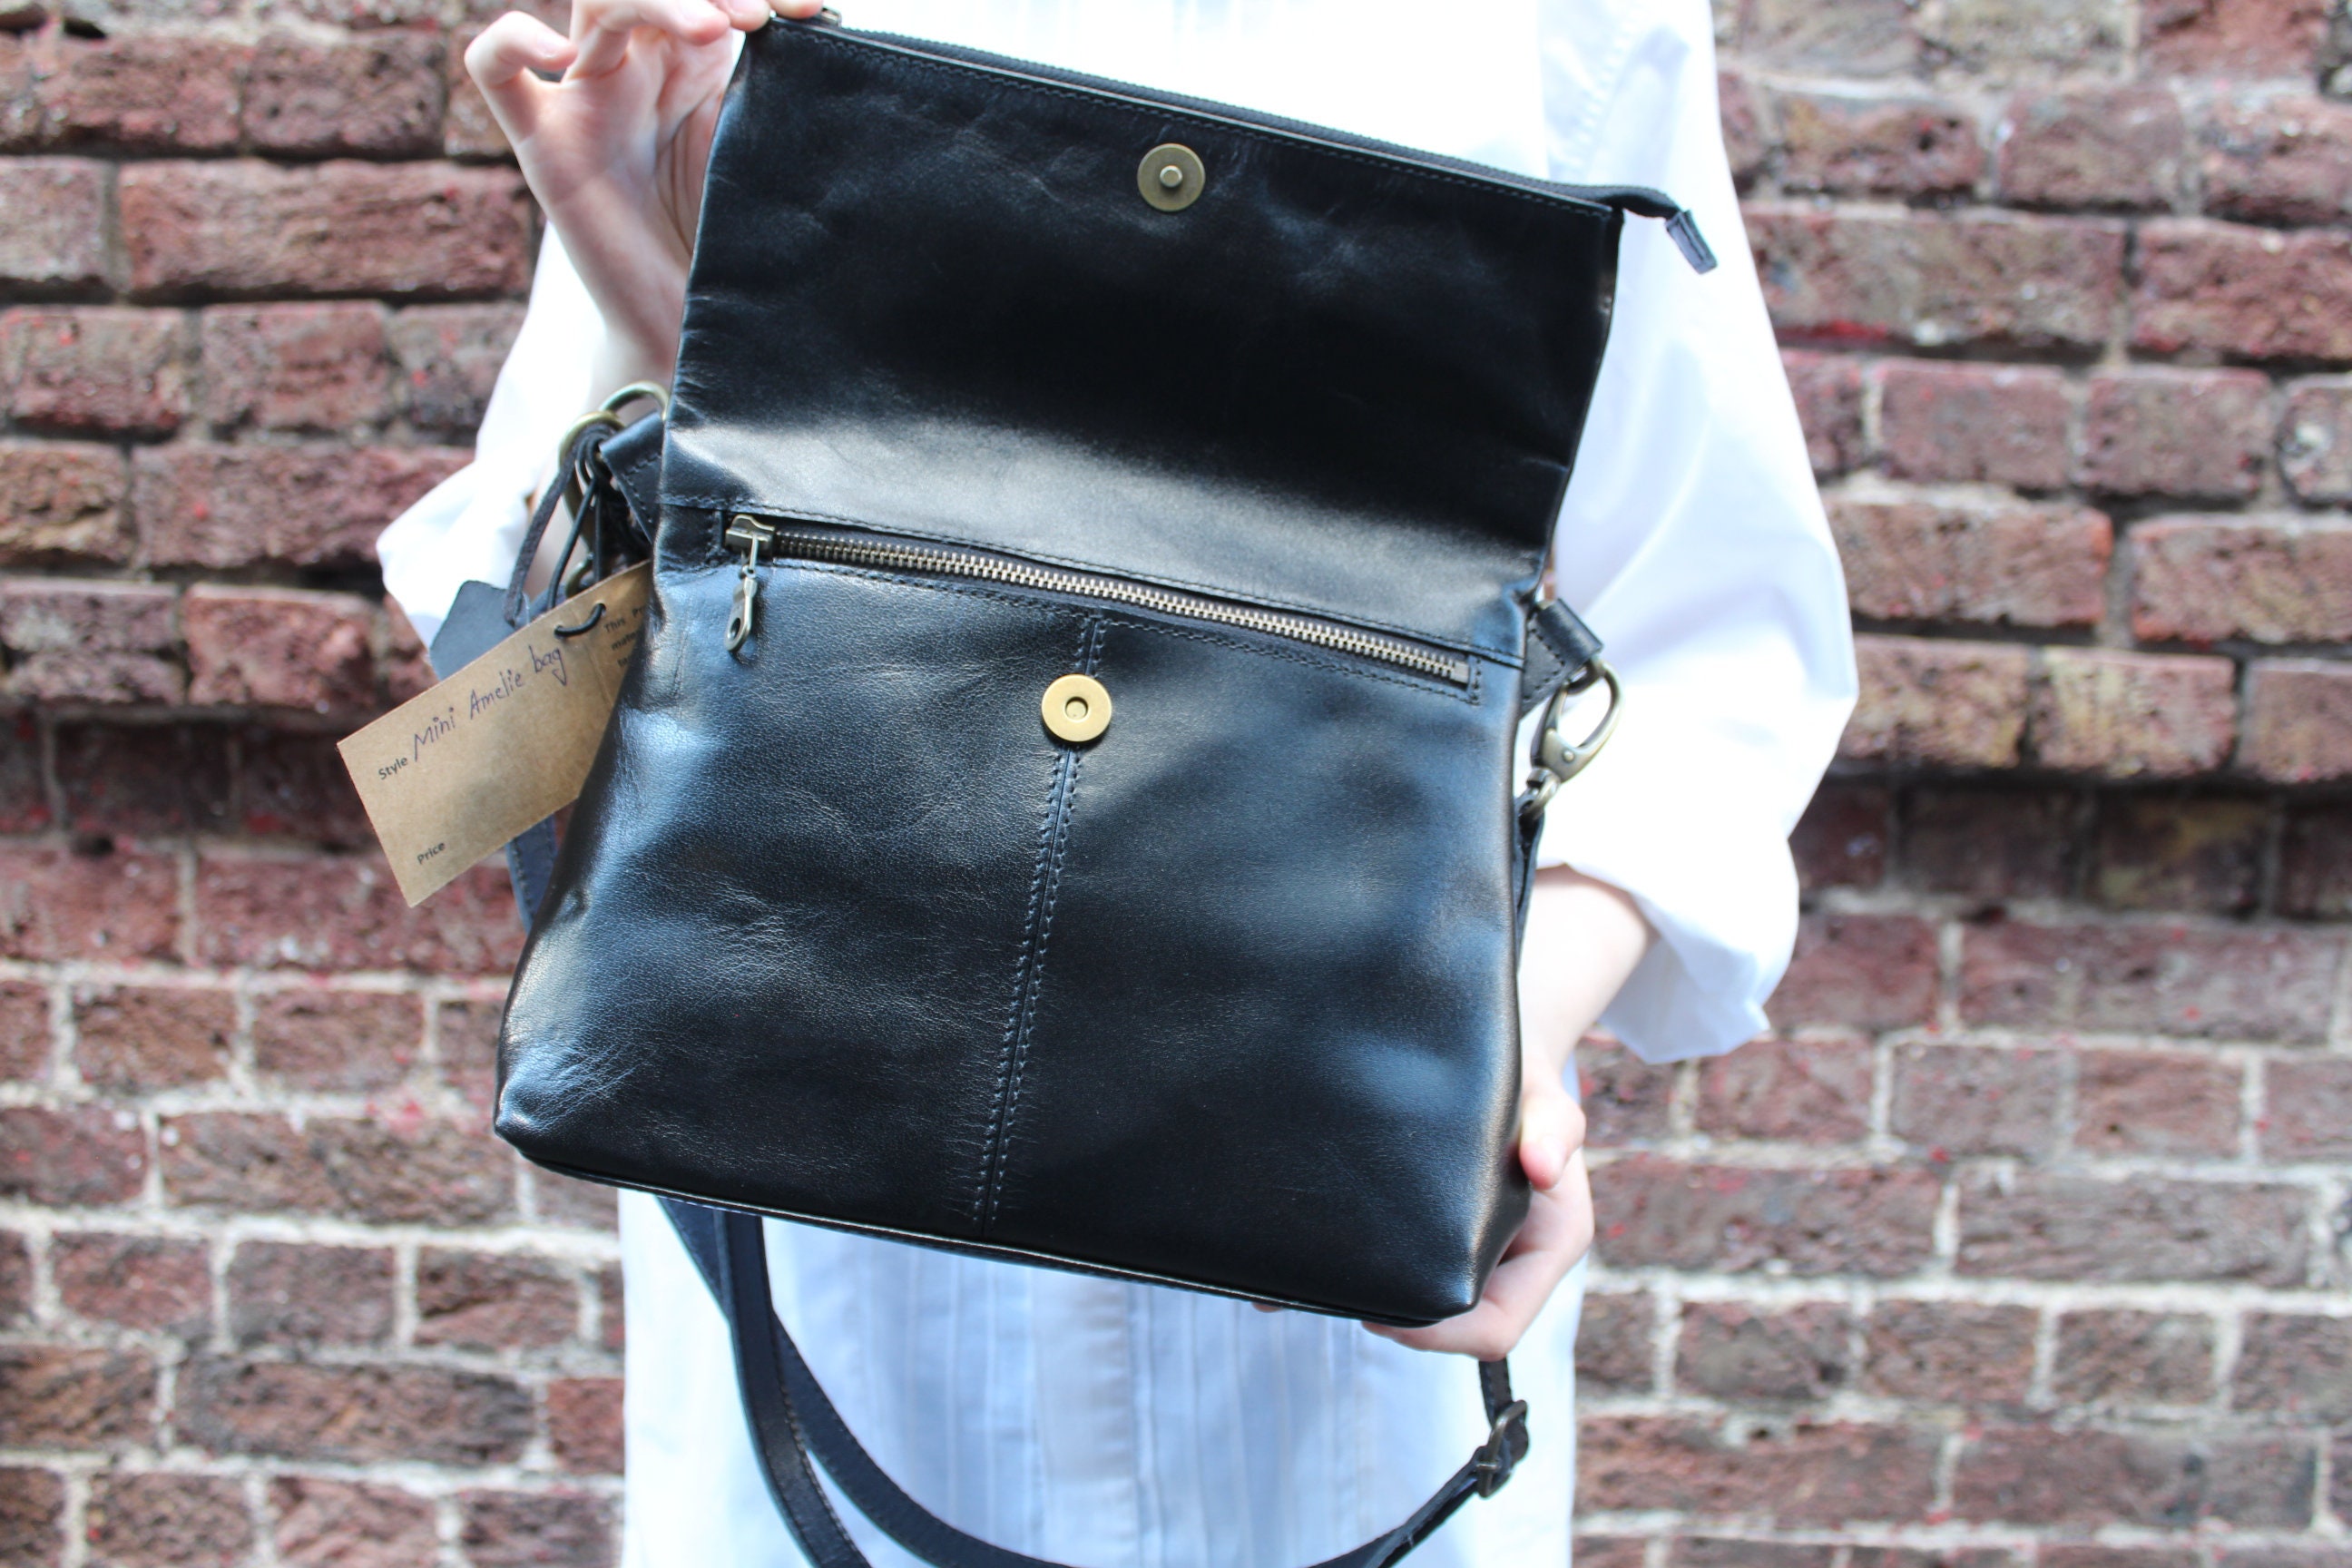 Zip Bag Small | Black